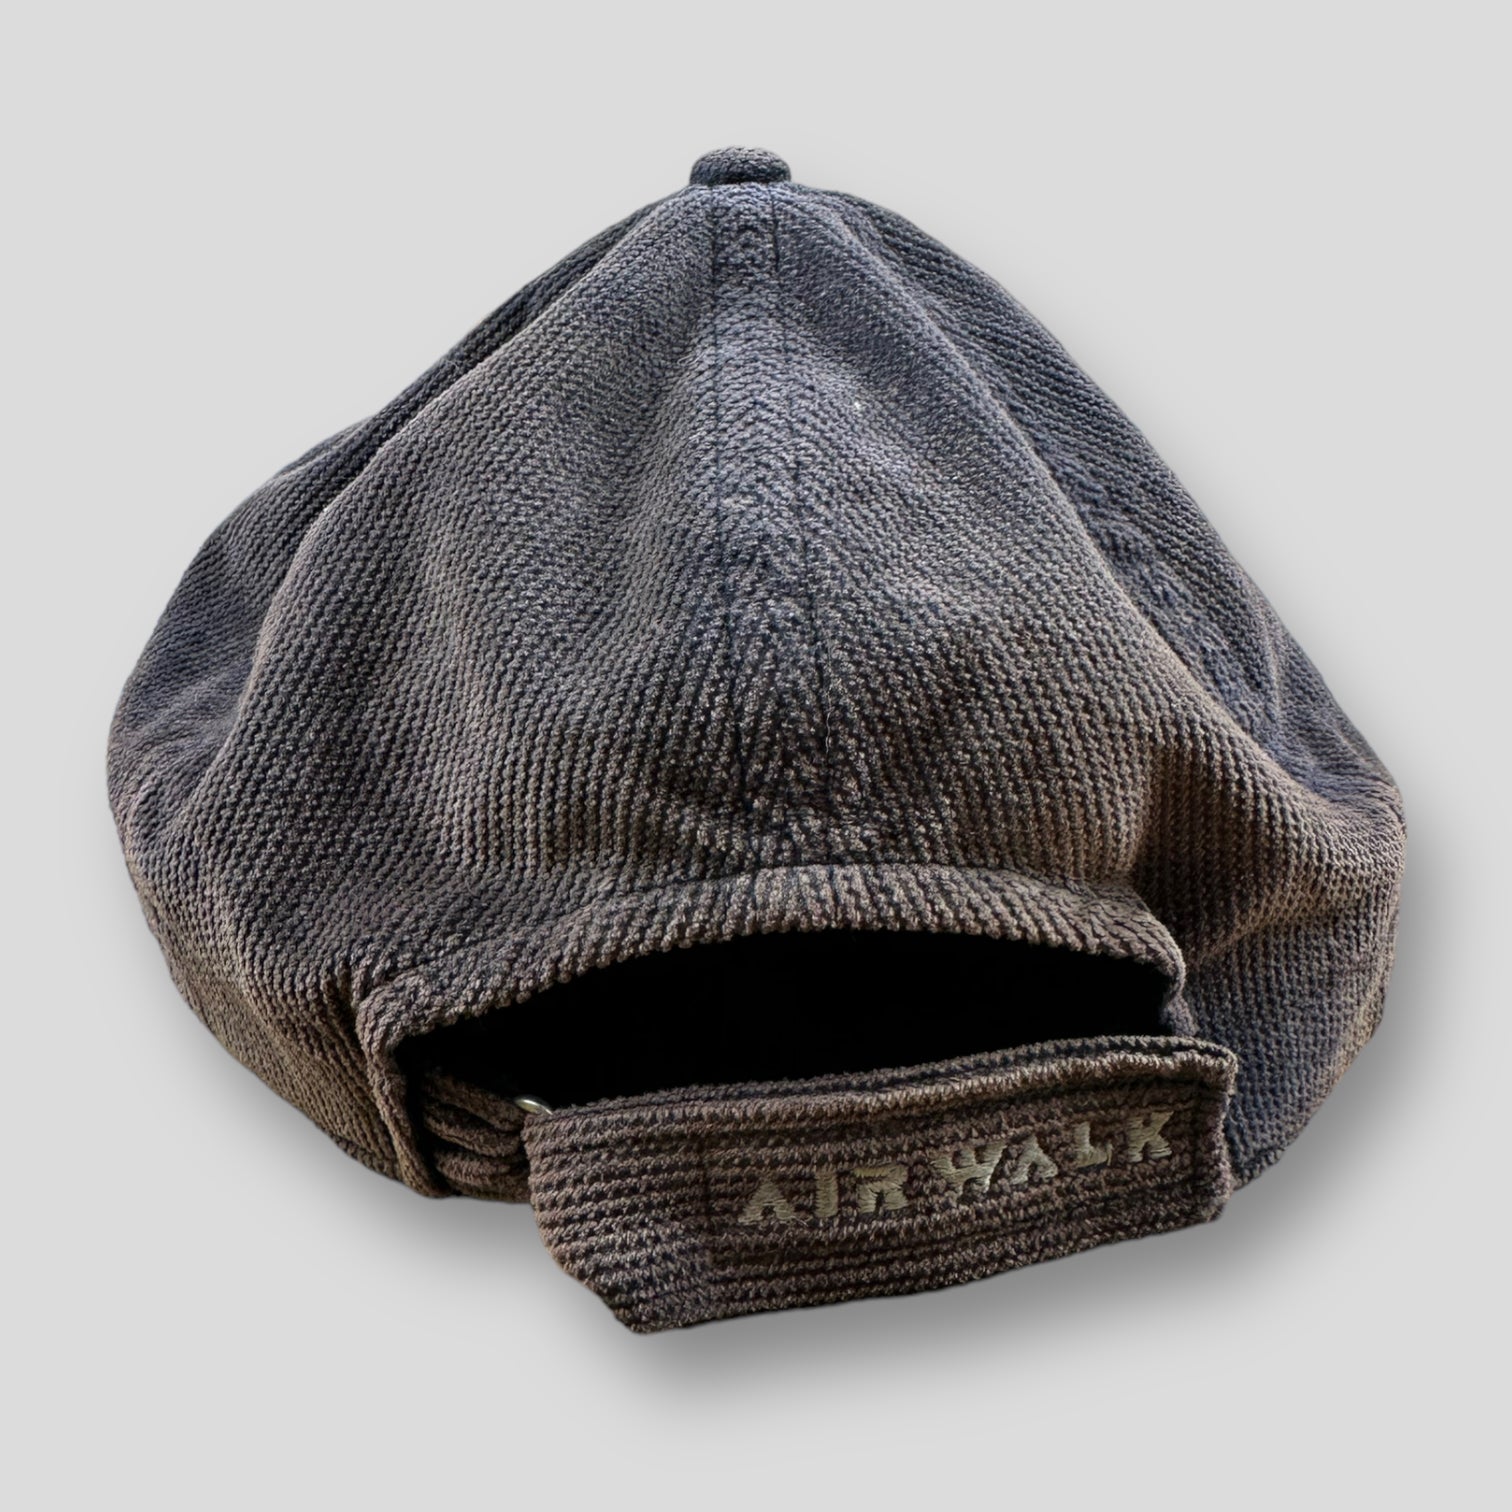 Airwalk vintage cap